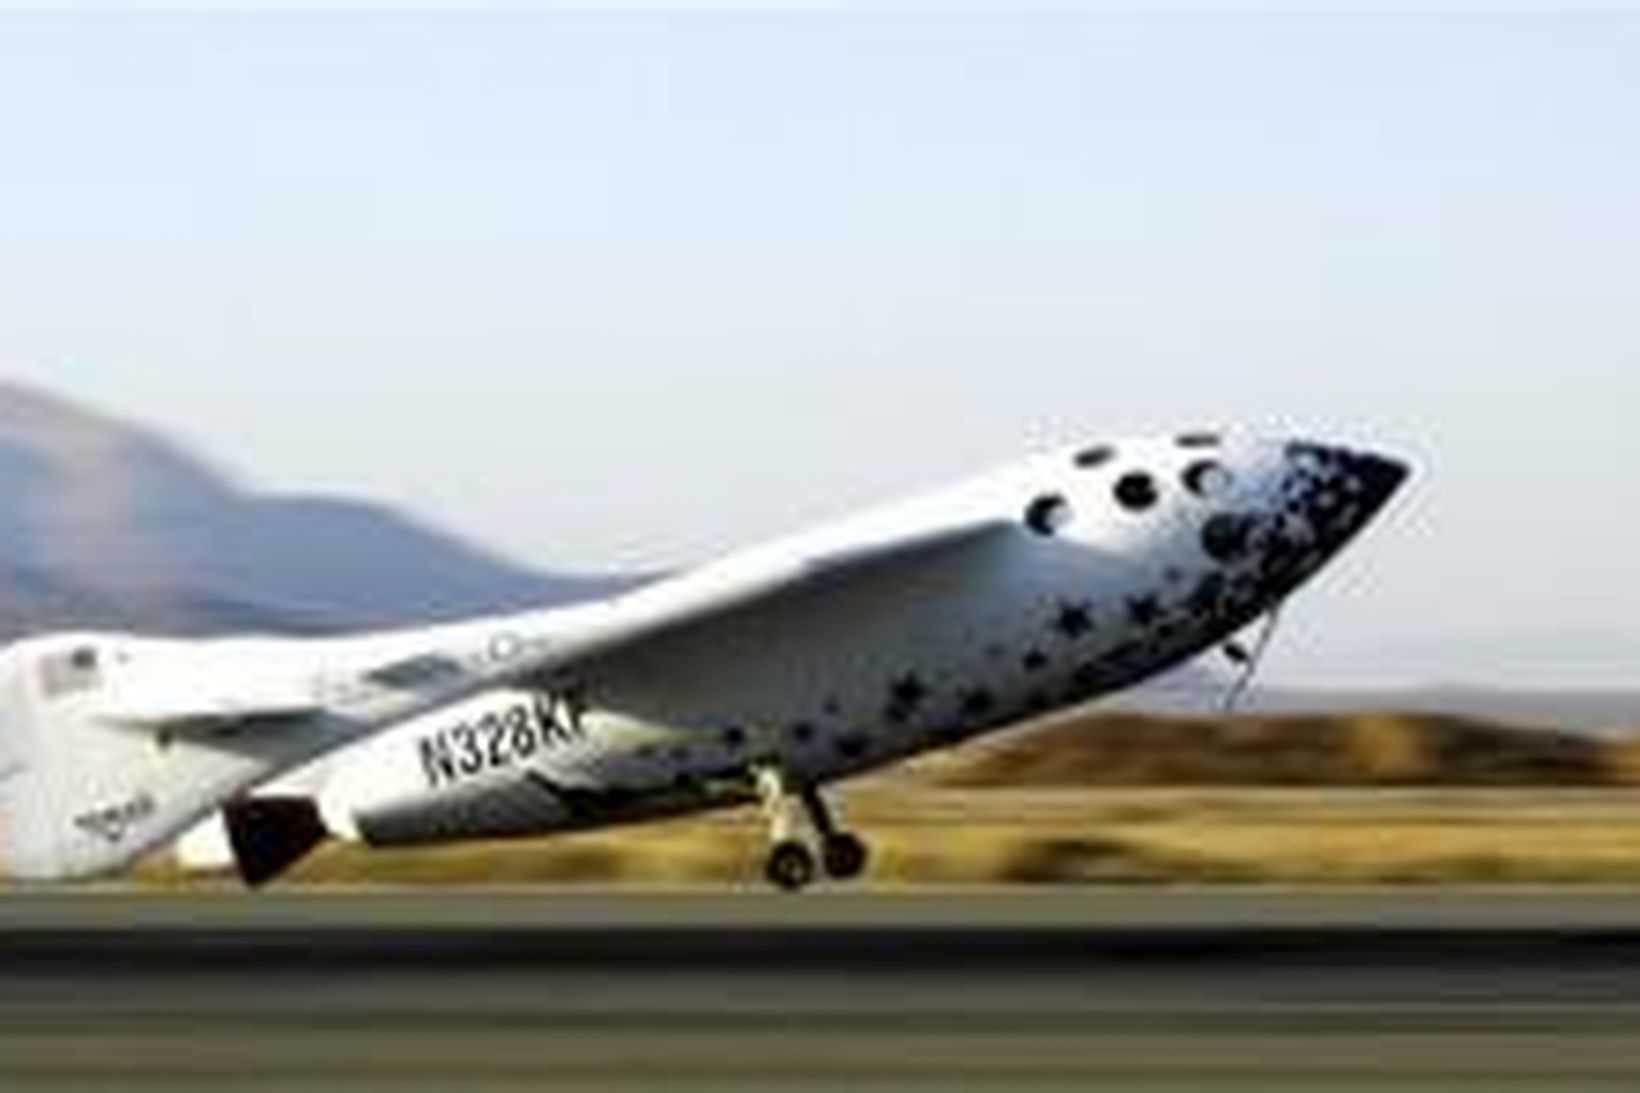 Geimferjan SpaceShipOne,